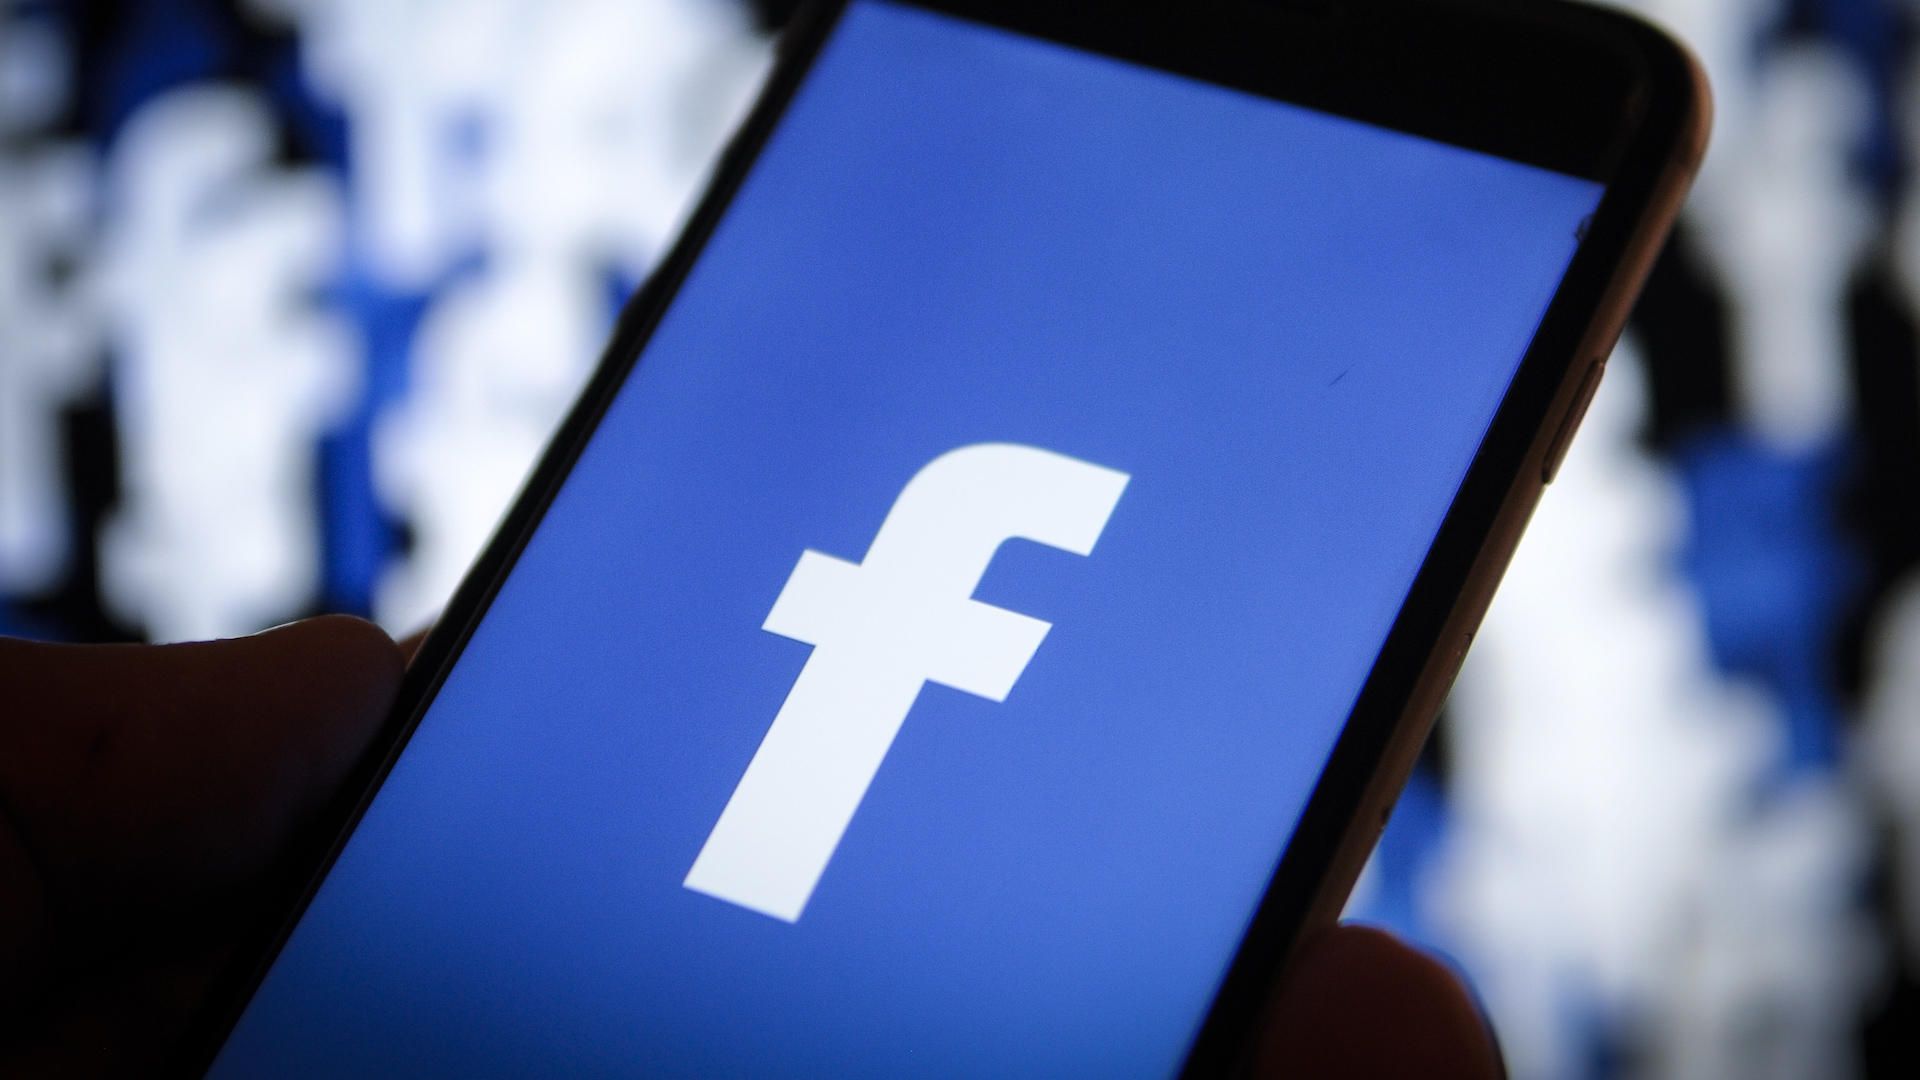 साेशल मीडिया को आधार से जोड़ने वाली फेसबुक की याचिका पर सुप्रीम कोर्ट सुनवाई को तैयार